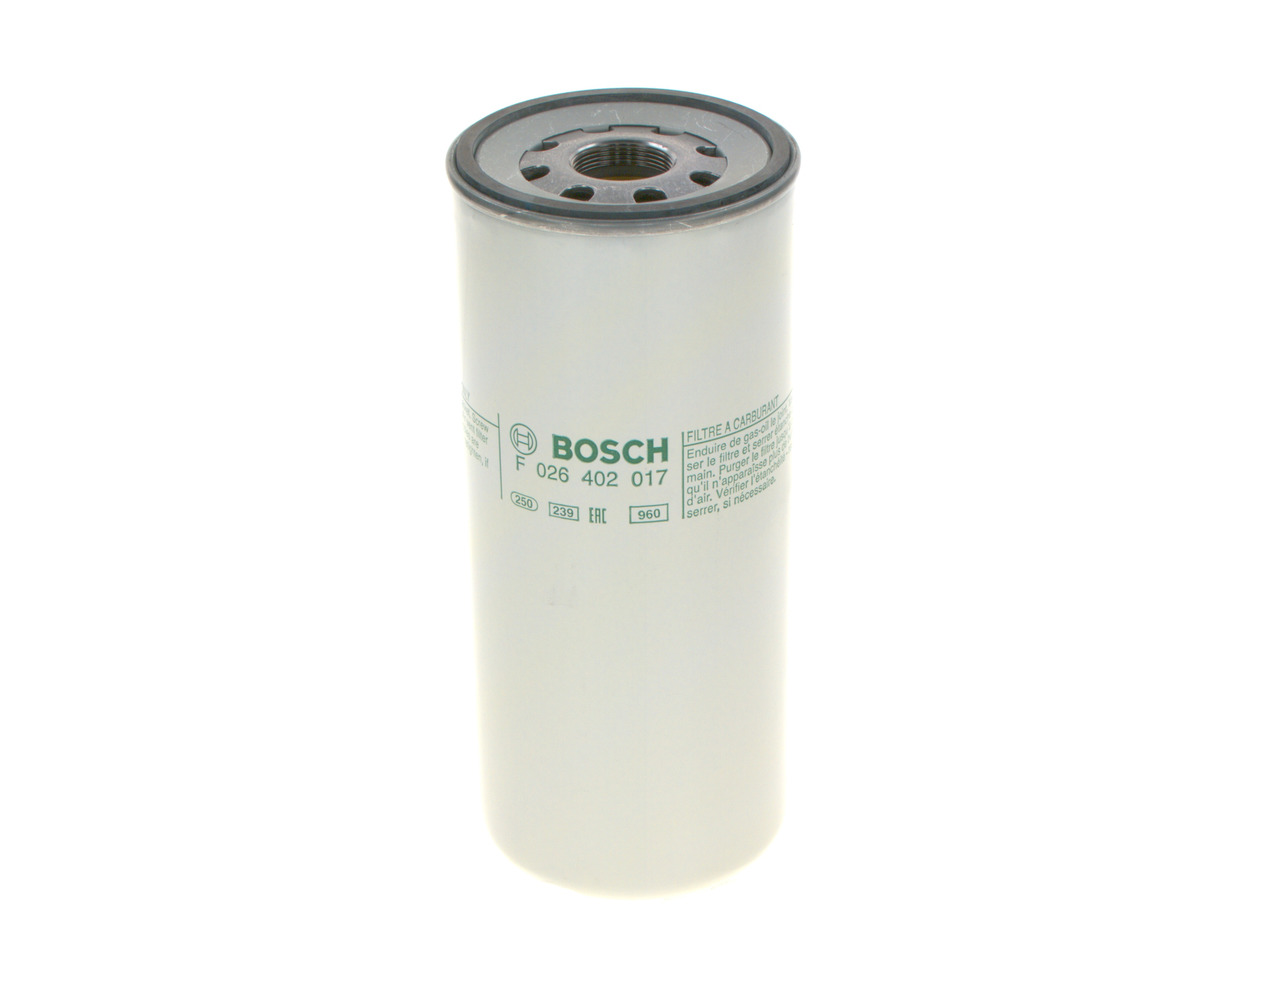 BOSCH F 026 402 017 Fuel filter Spin-on Filter